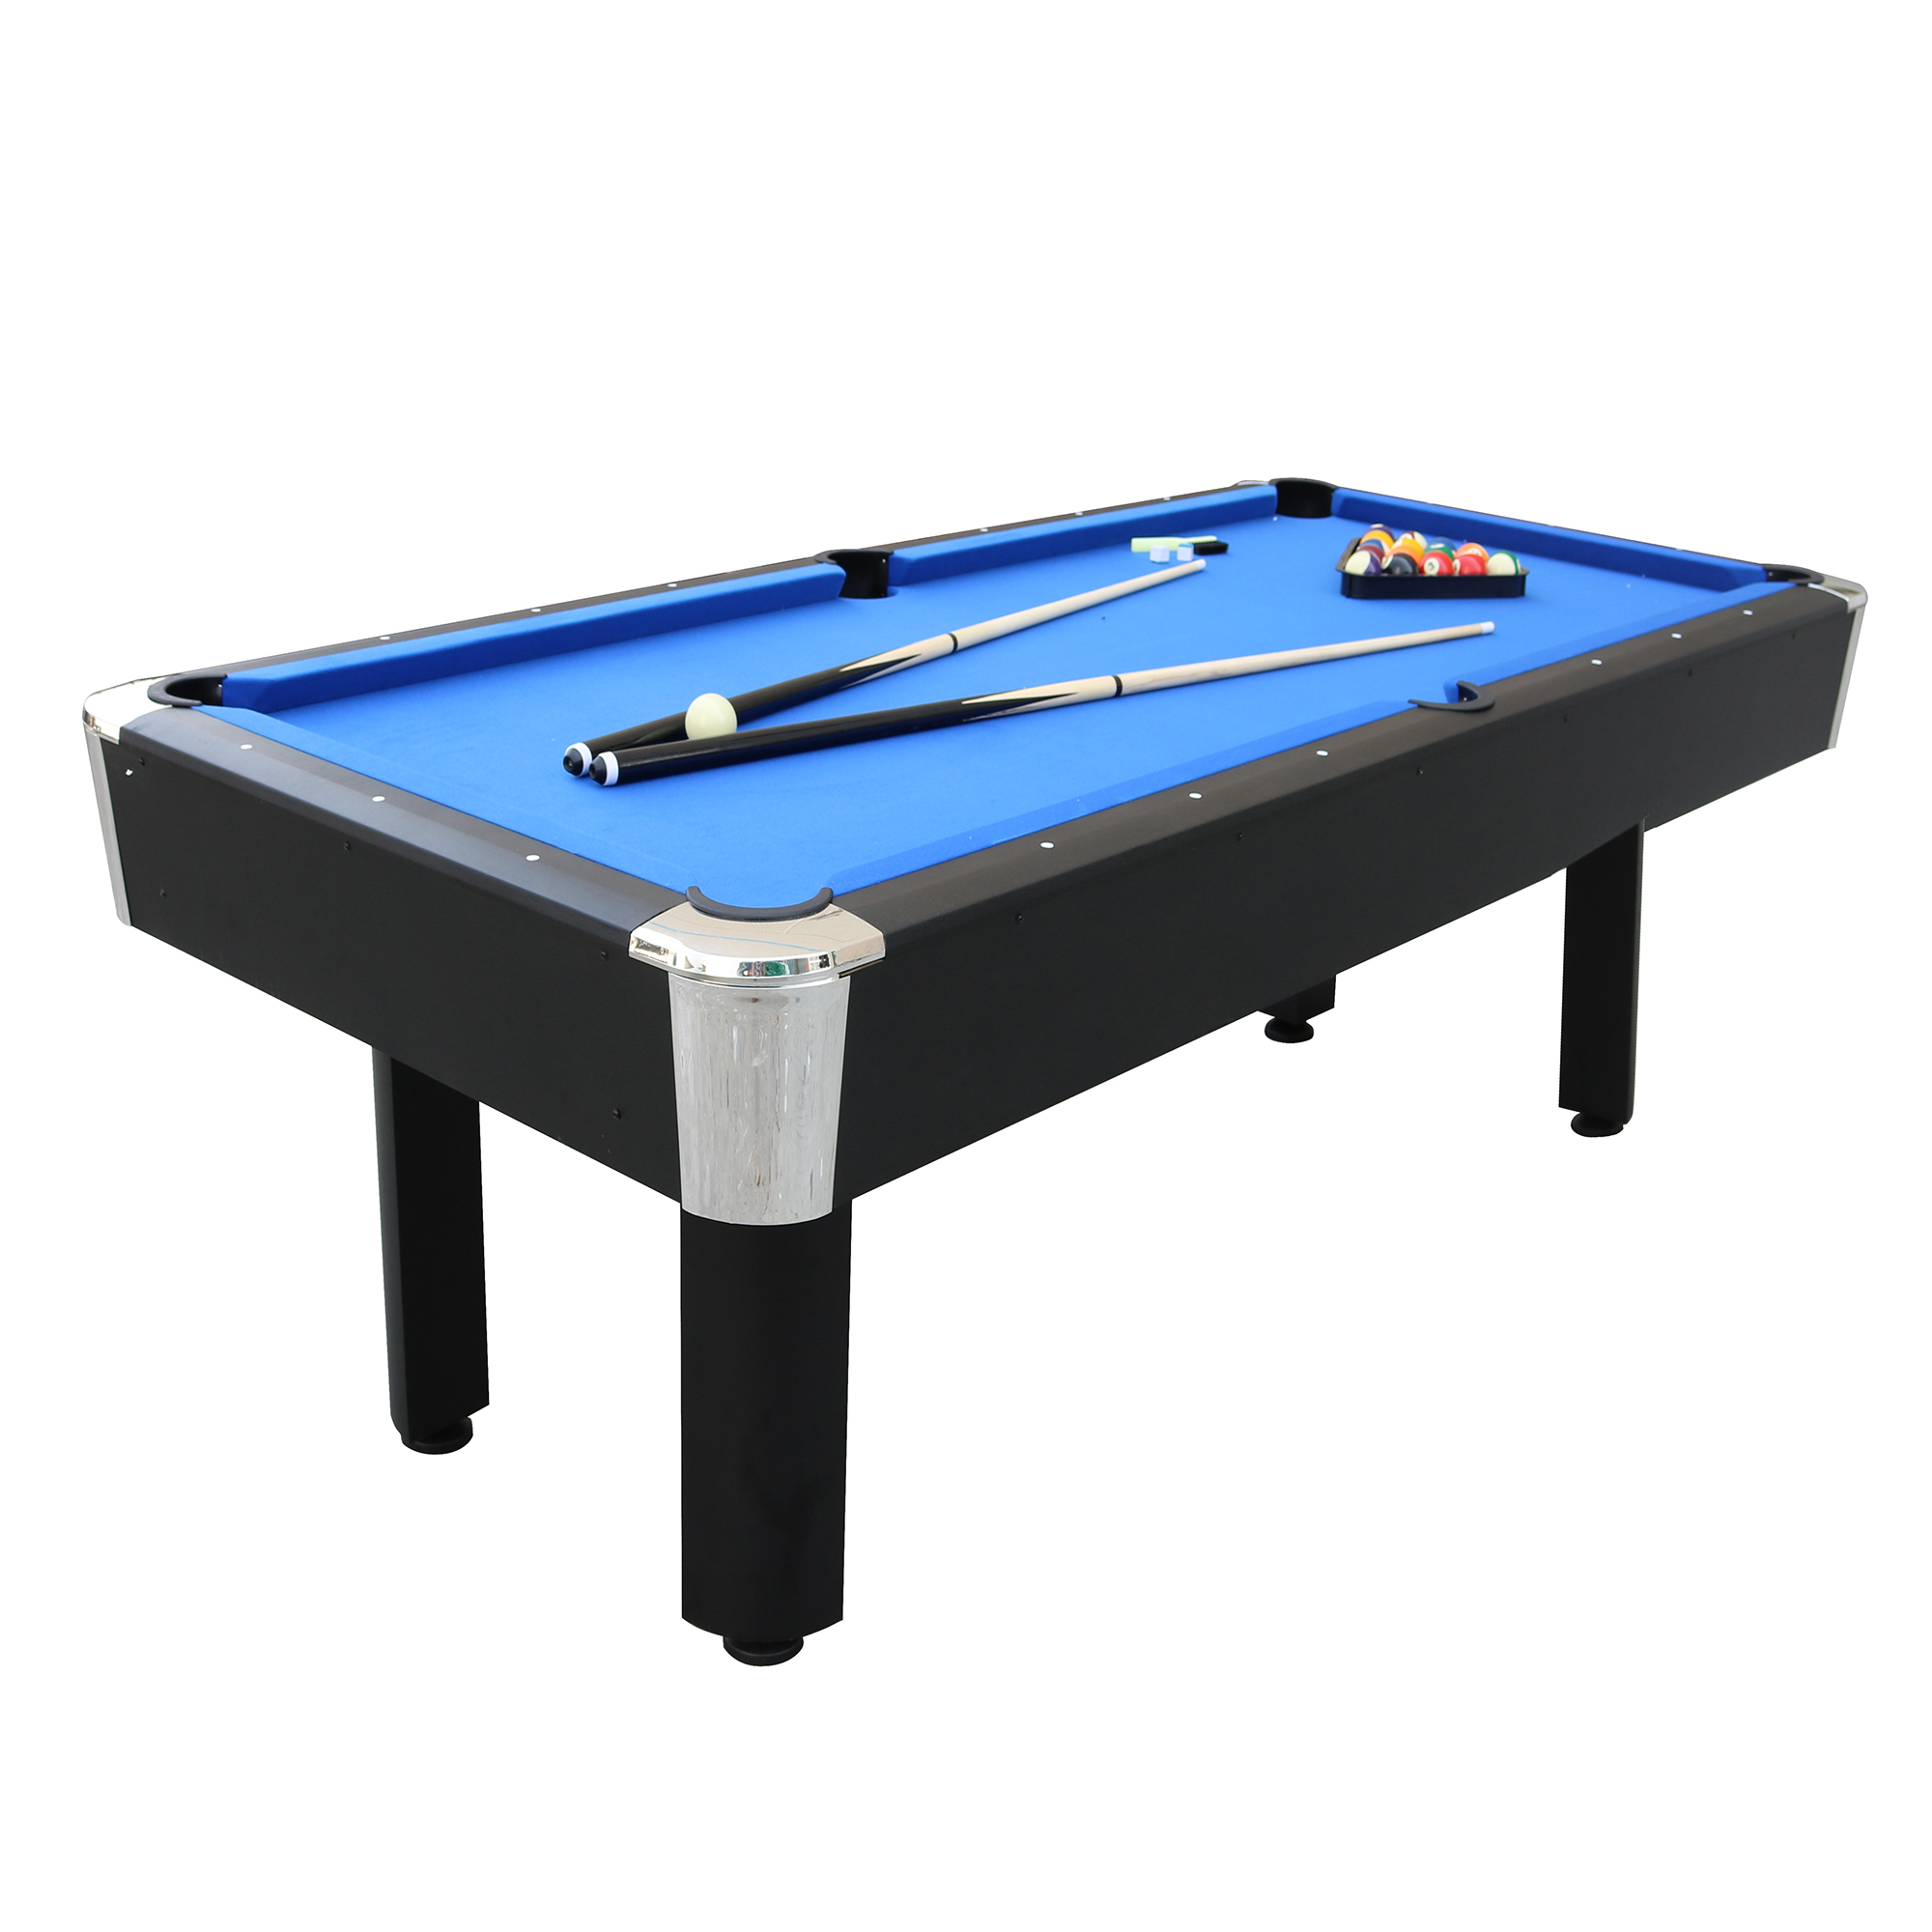 Sportcraft Arlington 84″ Blue Billiard Table with Arcade Style Ball Return & Table Tennis Top